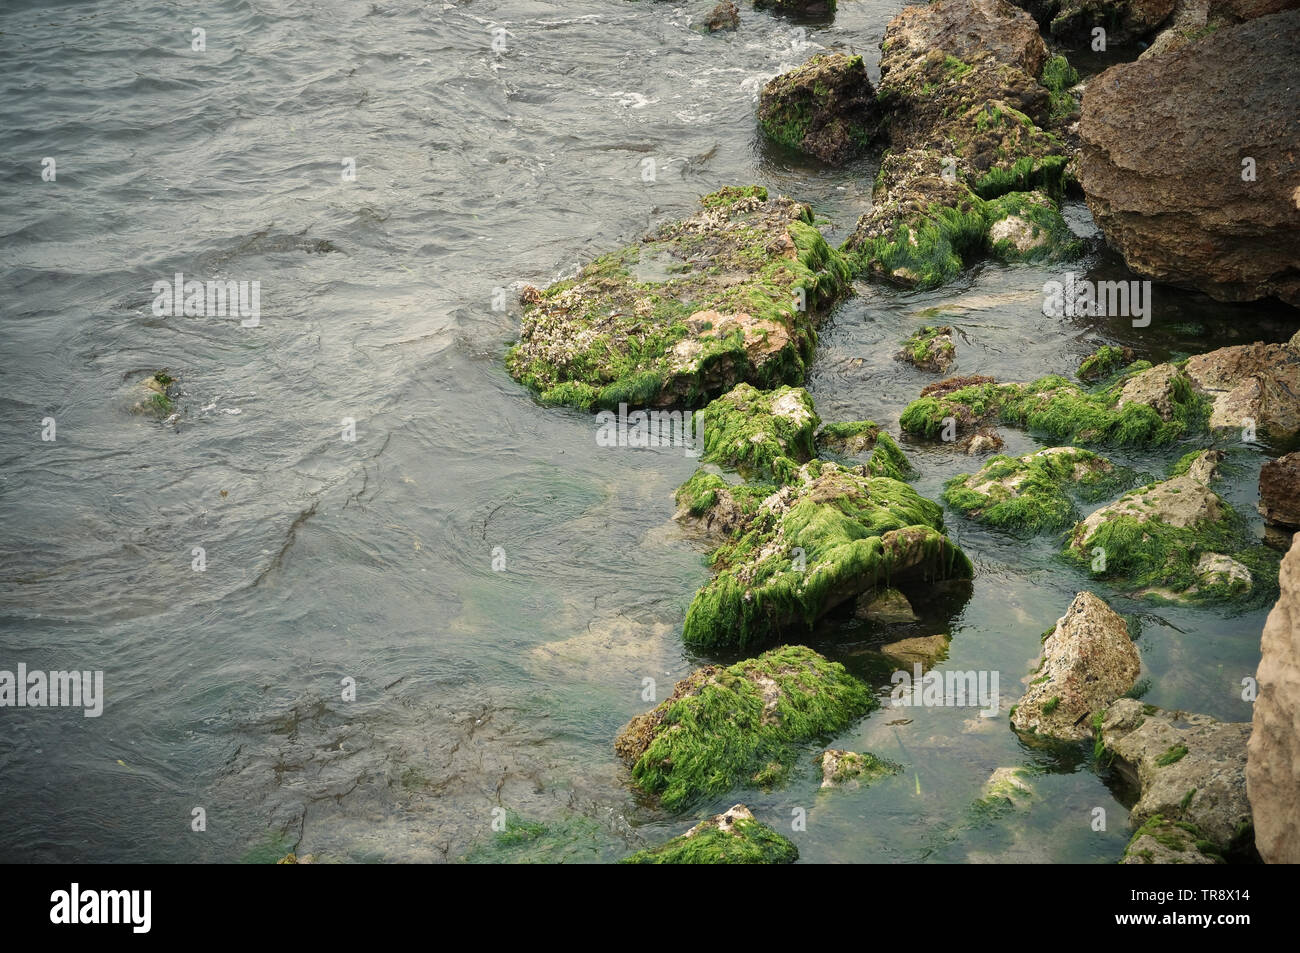 Les algues vertes sur la plage de rochers dans l'eau de mer calme Banque D'Images